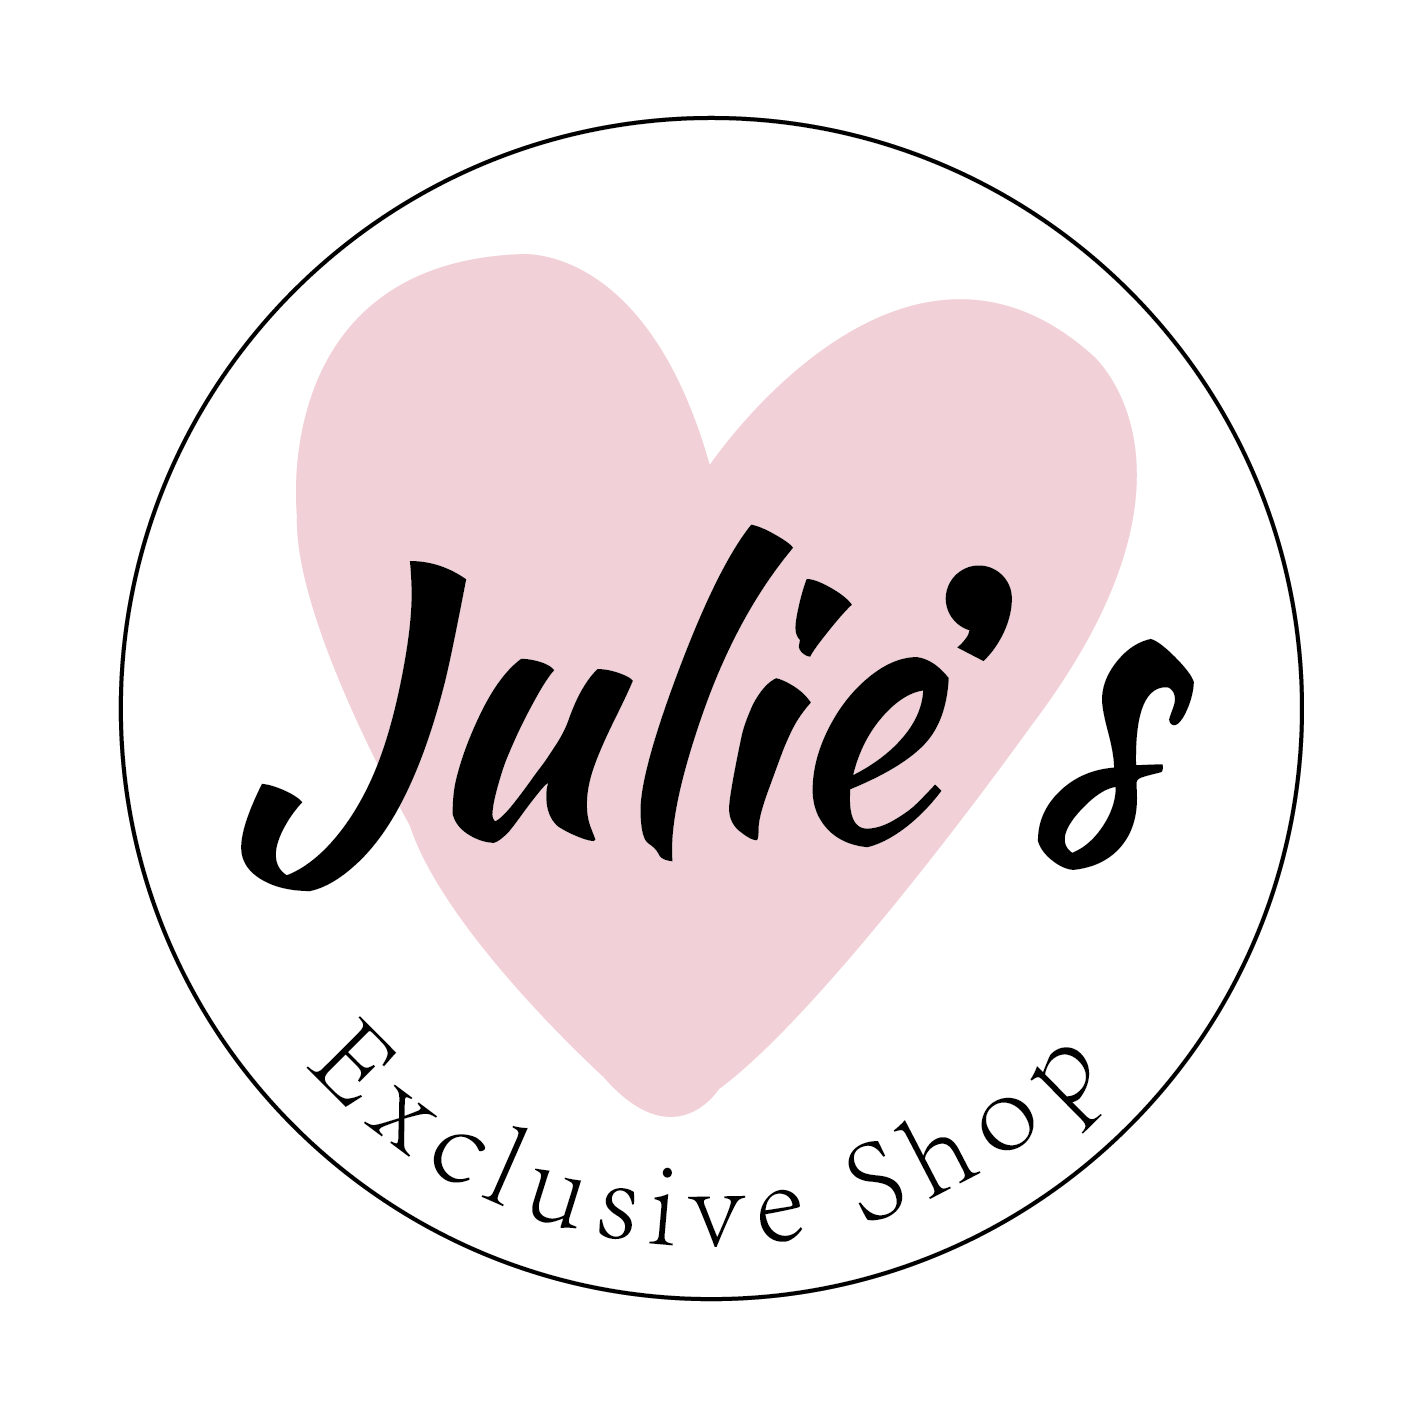 LoveJulies Exclusive Shop